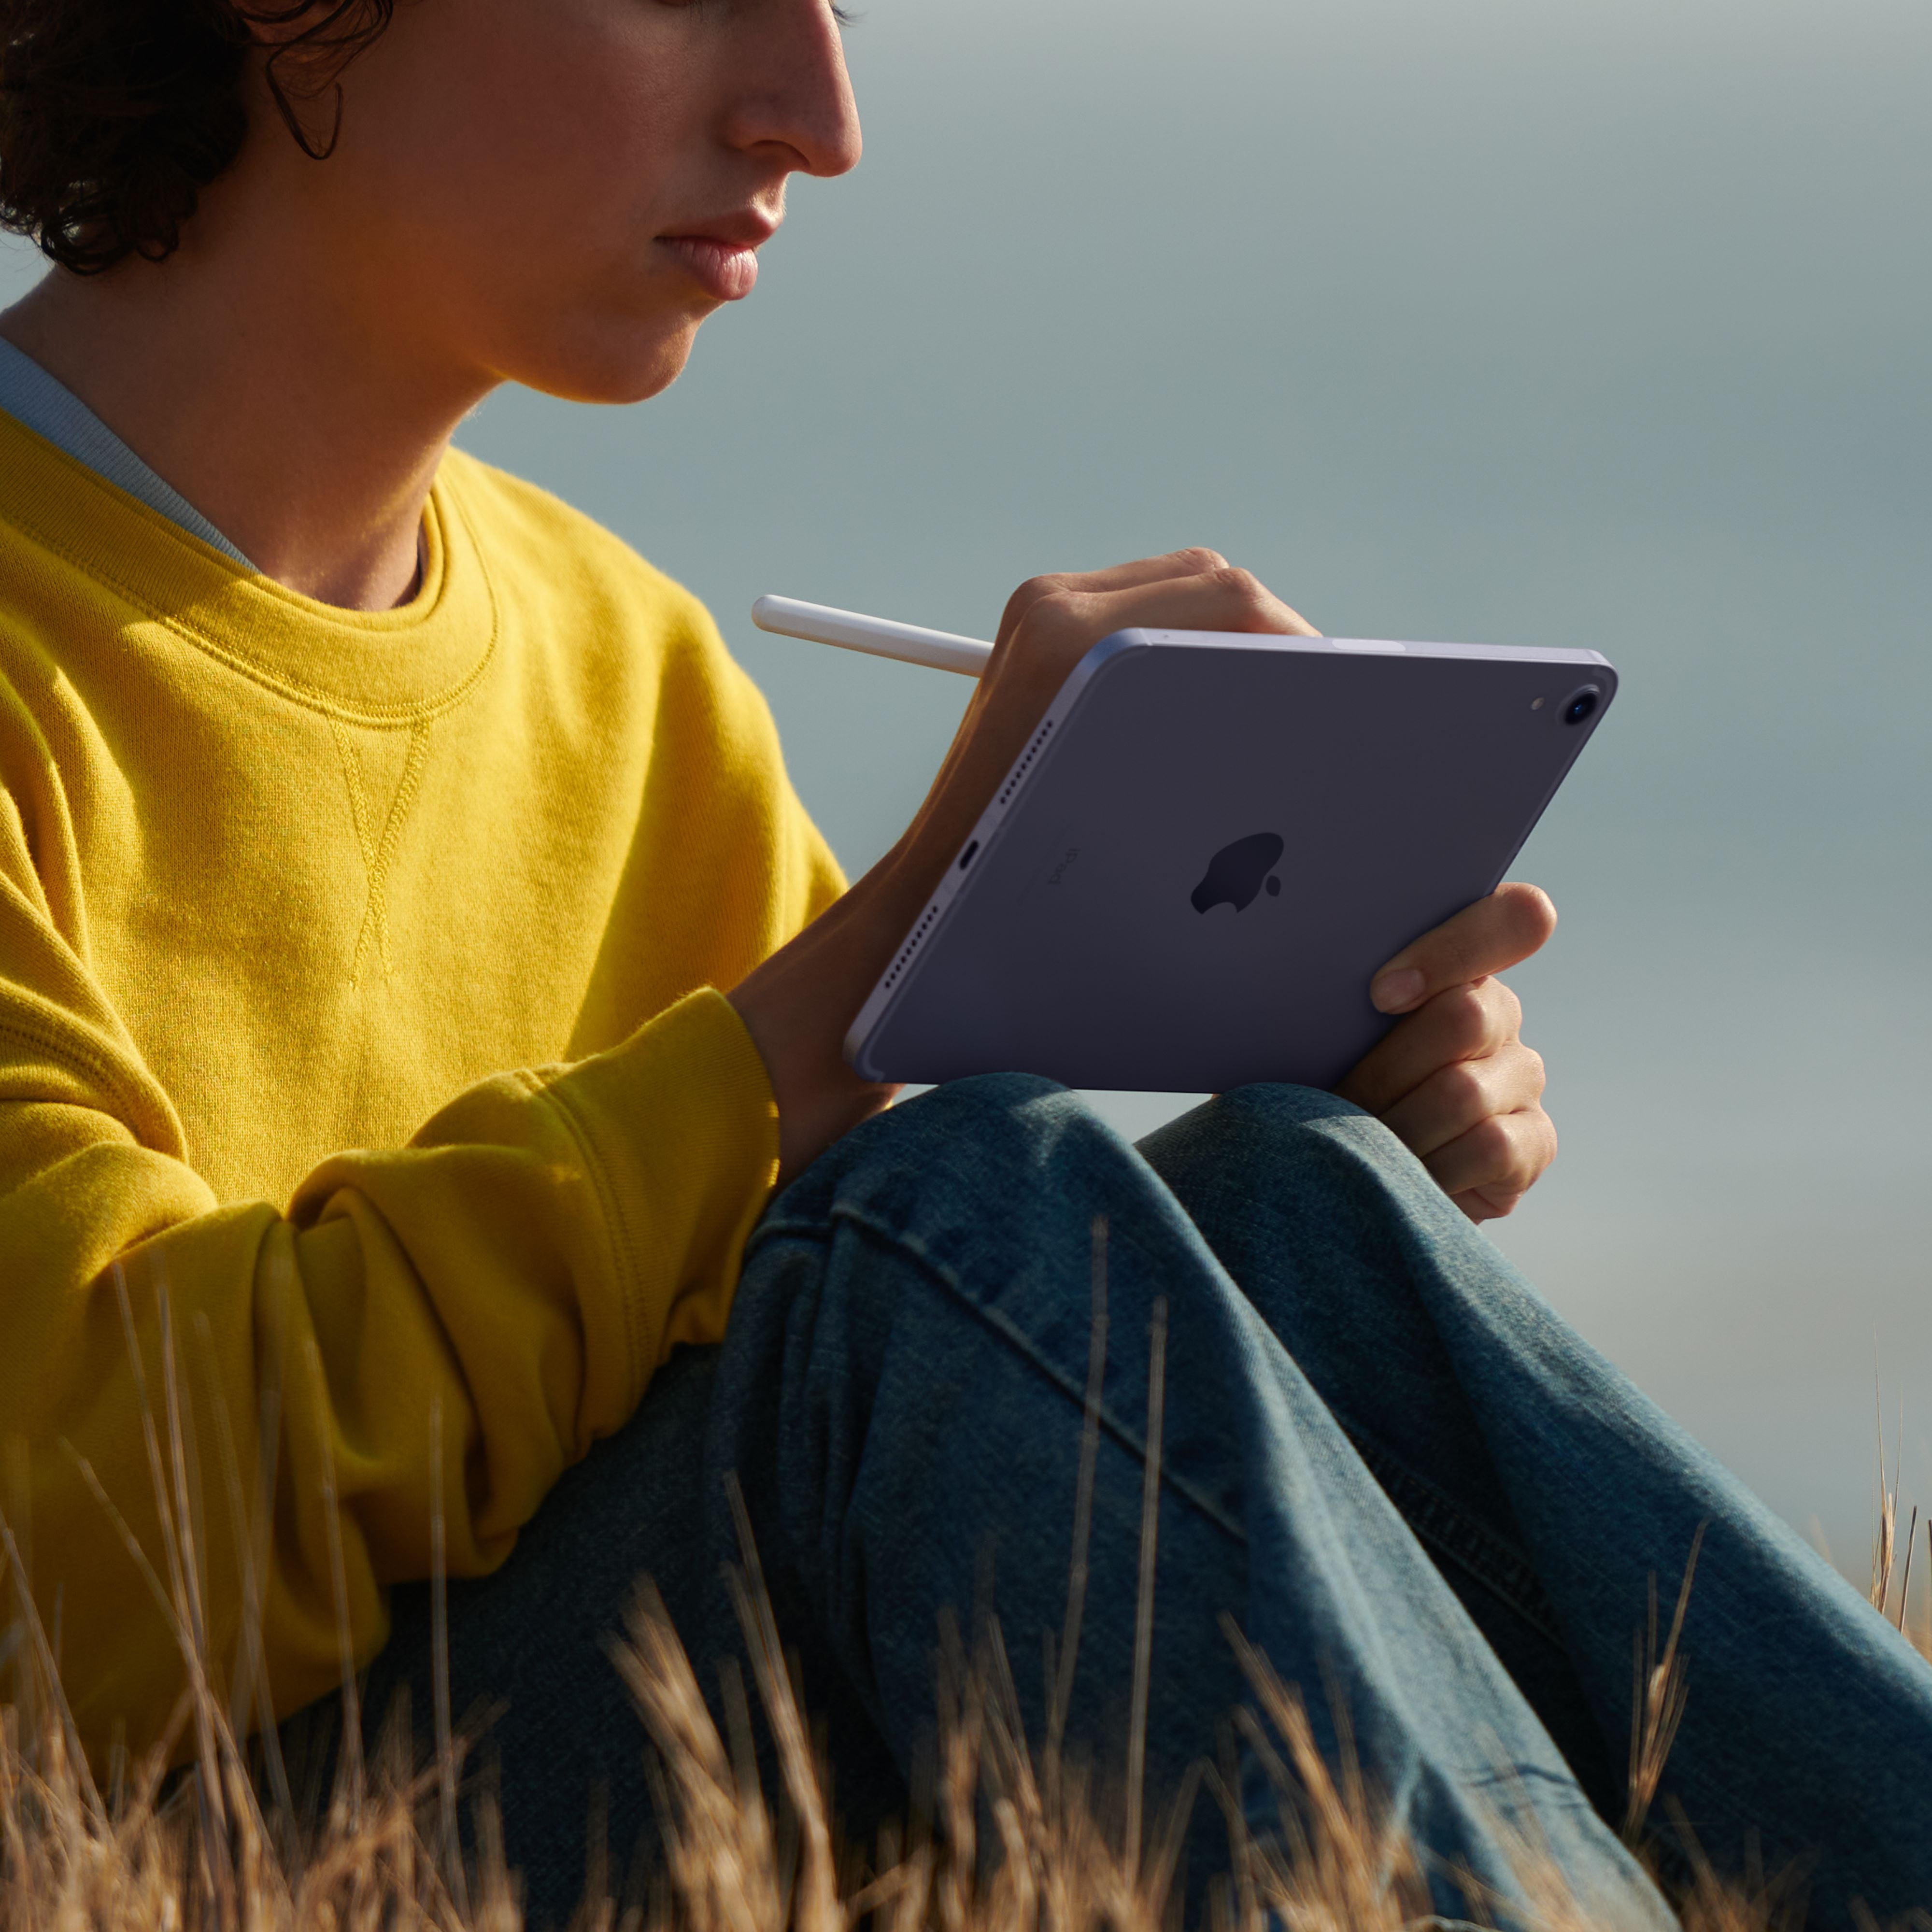 2021 Apple iPad Mini Wi-Fi + Cellular 64GB - Space Gray (6th